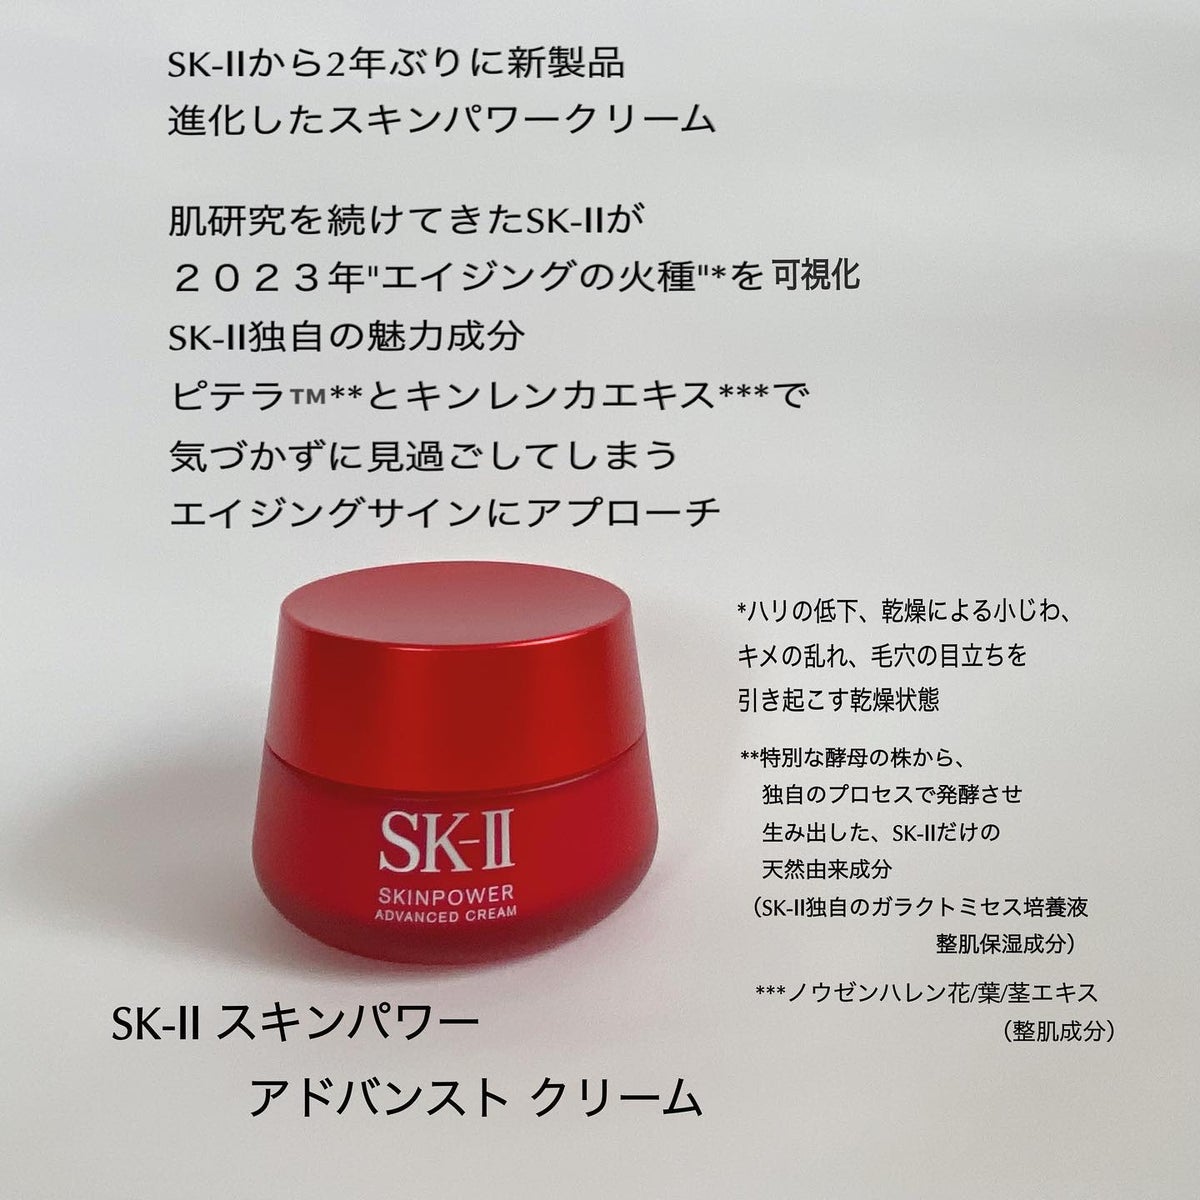 新製品SK-II  スキンパワー クリーム(美容クリーム)